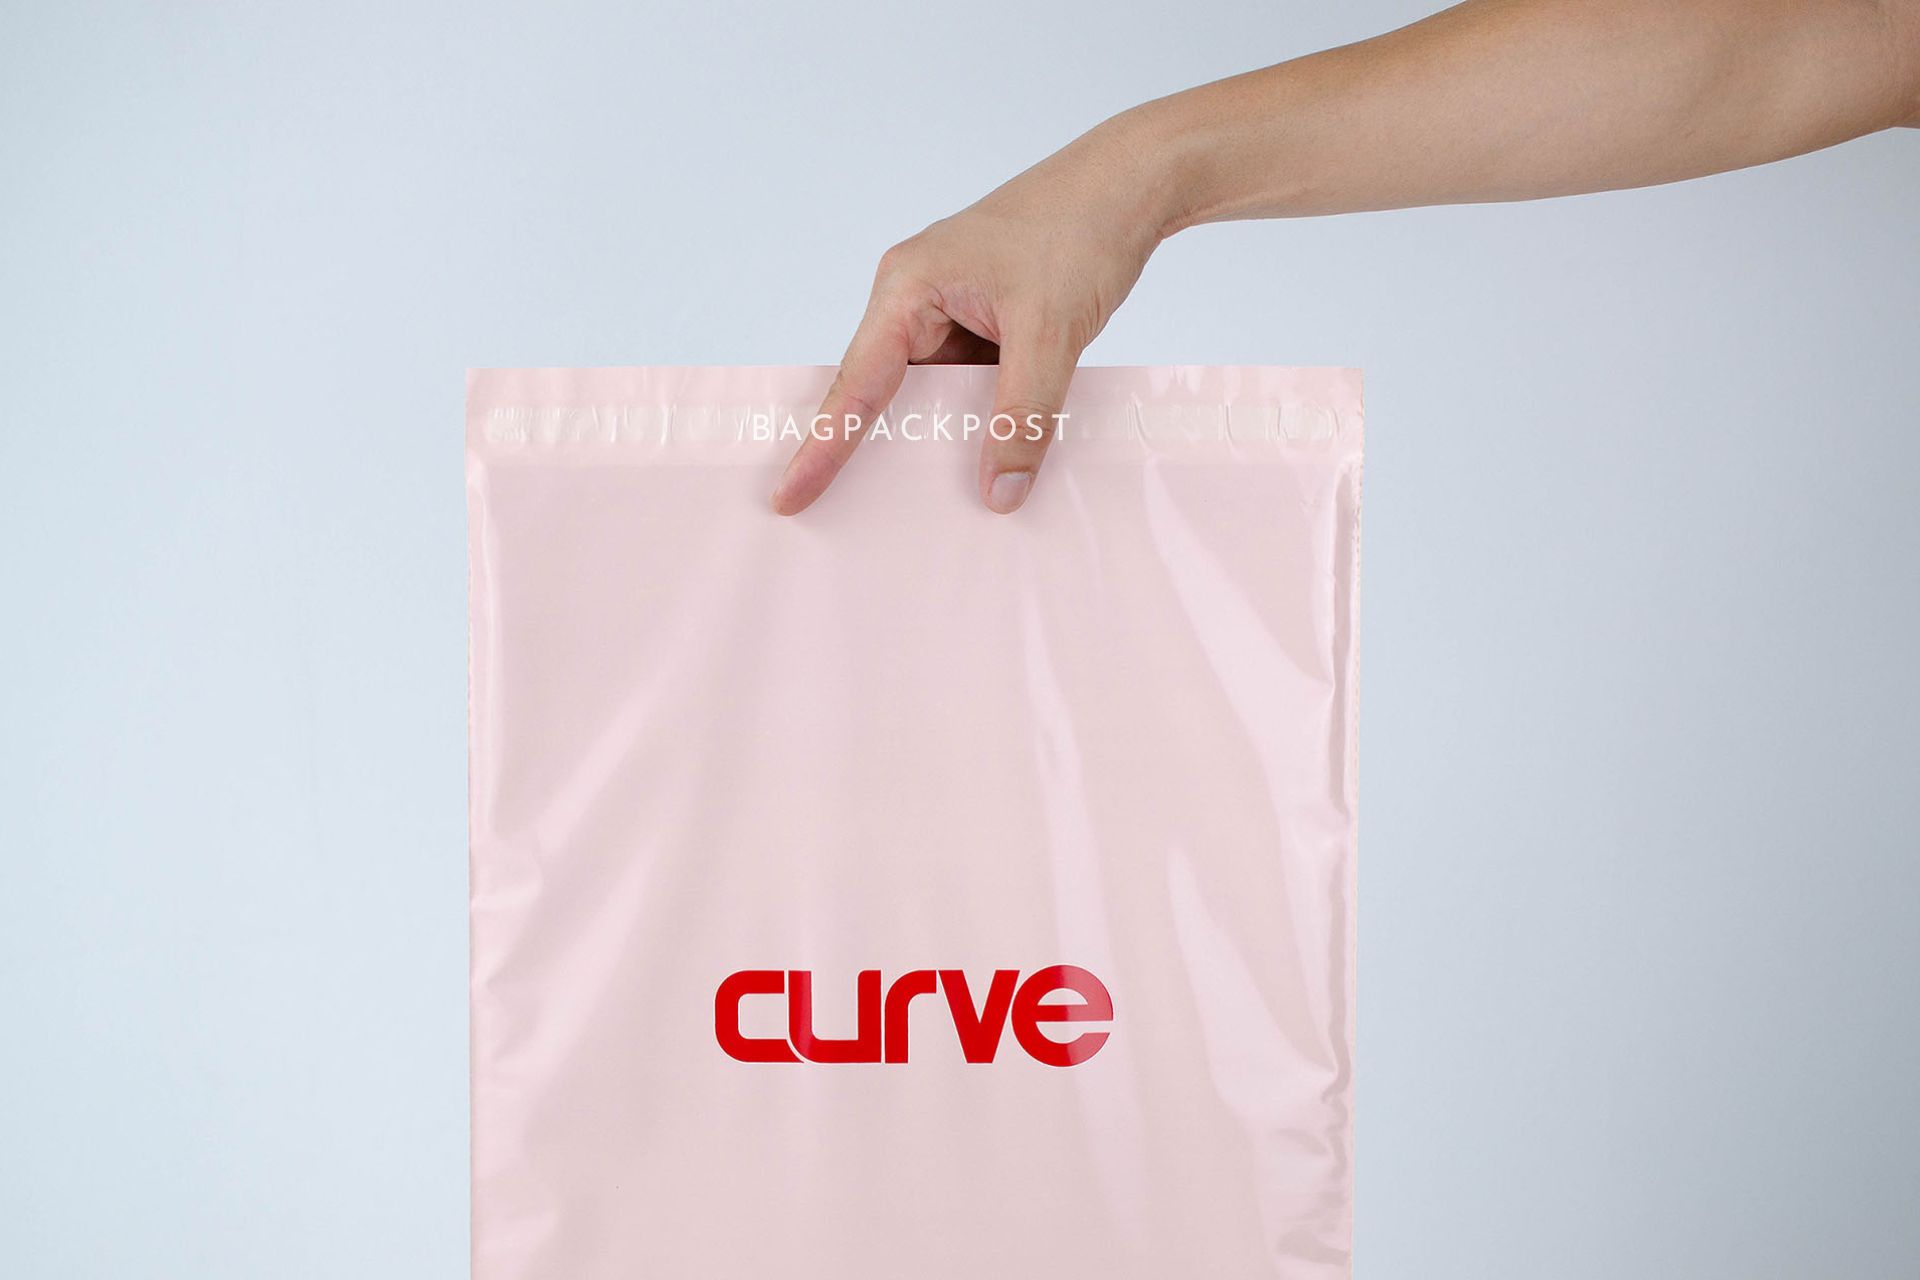 ผลิตถุงไปรษณีย์ ซองไปรษณีย์พิมพ์ลาย แบรนด์ CURVE ซองไปรษณีย์สีชมพู ถุงไปรษณีย์พิมพ์ลาย 1 BagPackPost